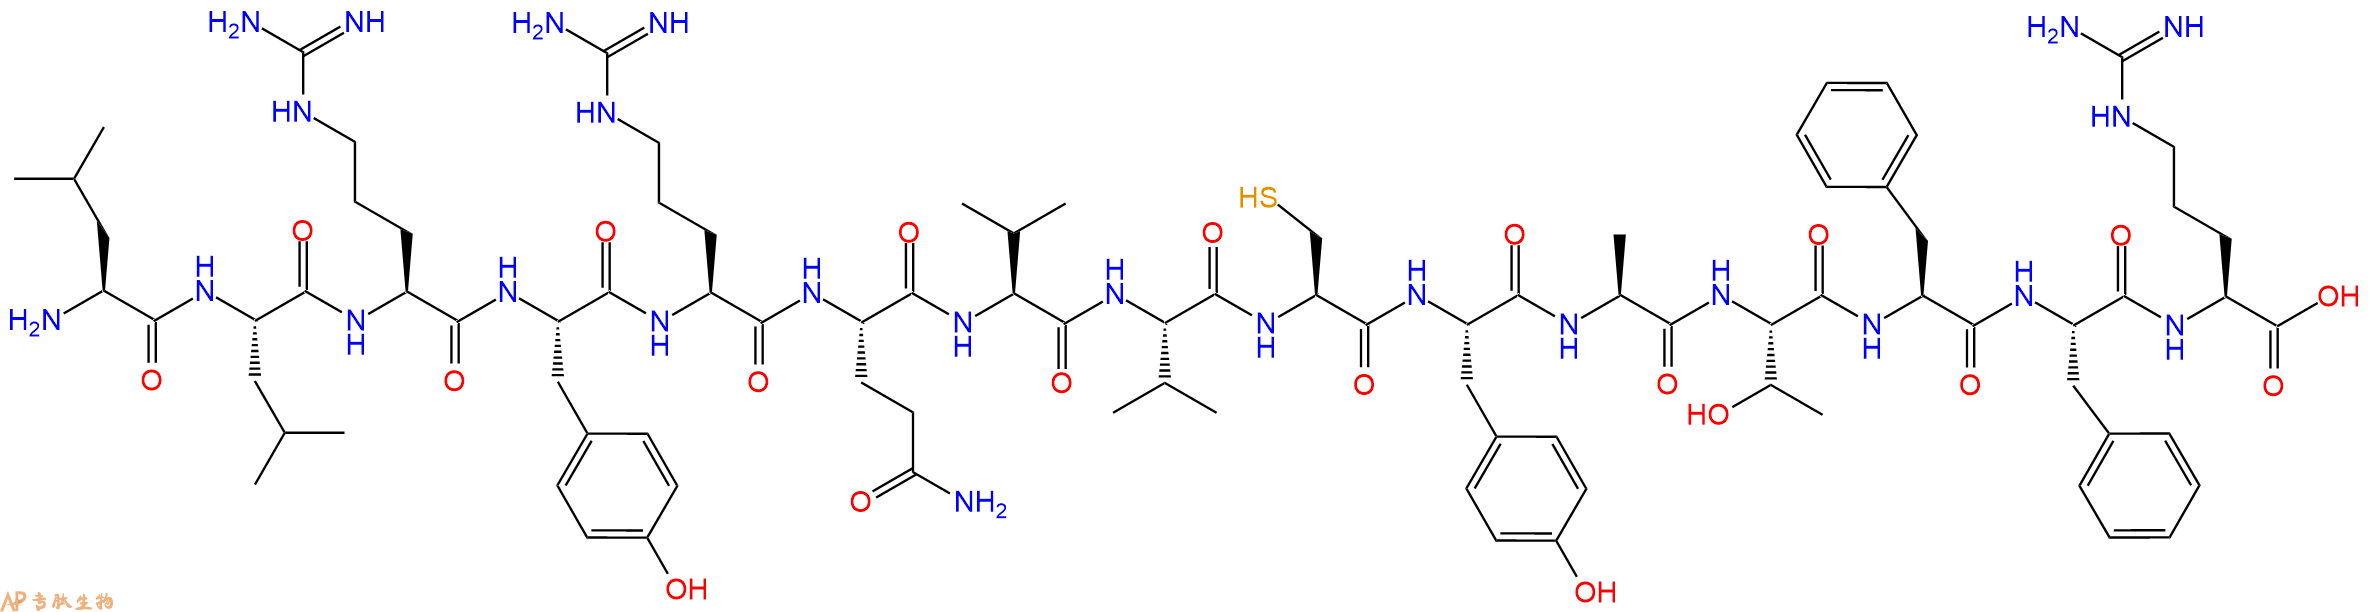 多肽LLRYRQVVCYATFFR的参数和合成路线|三字母为Leu-Leu-Arg-Tyr-Arg-